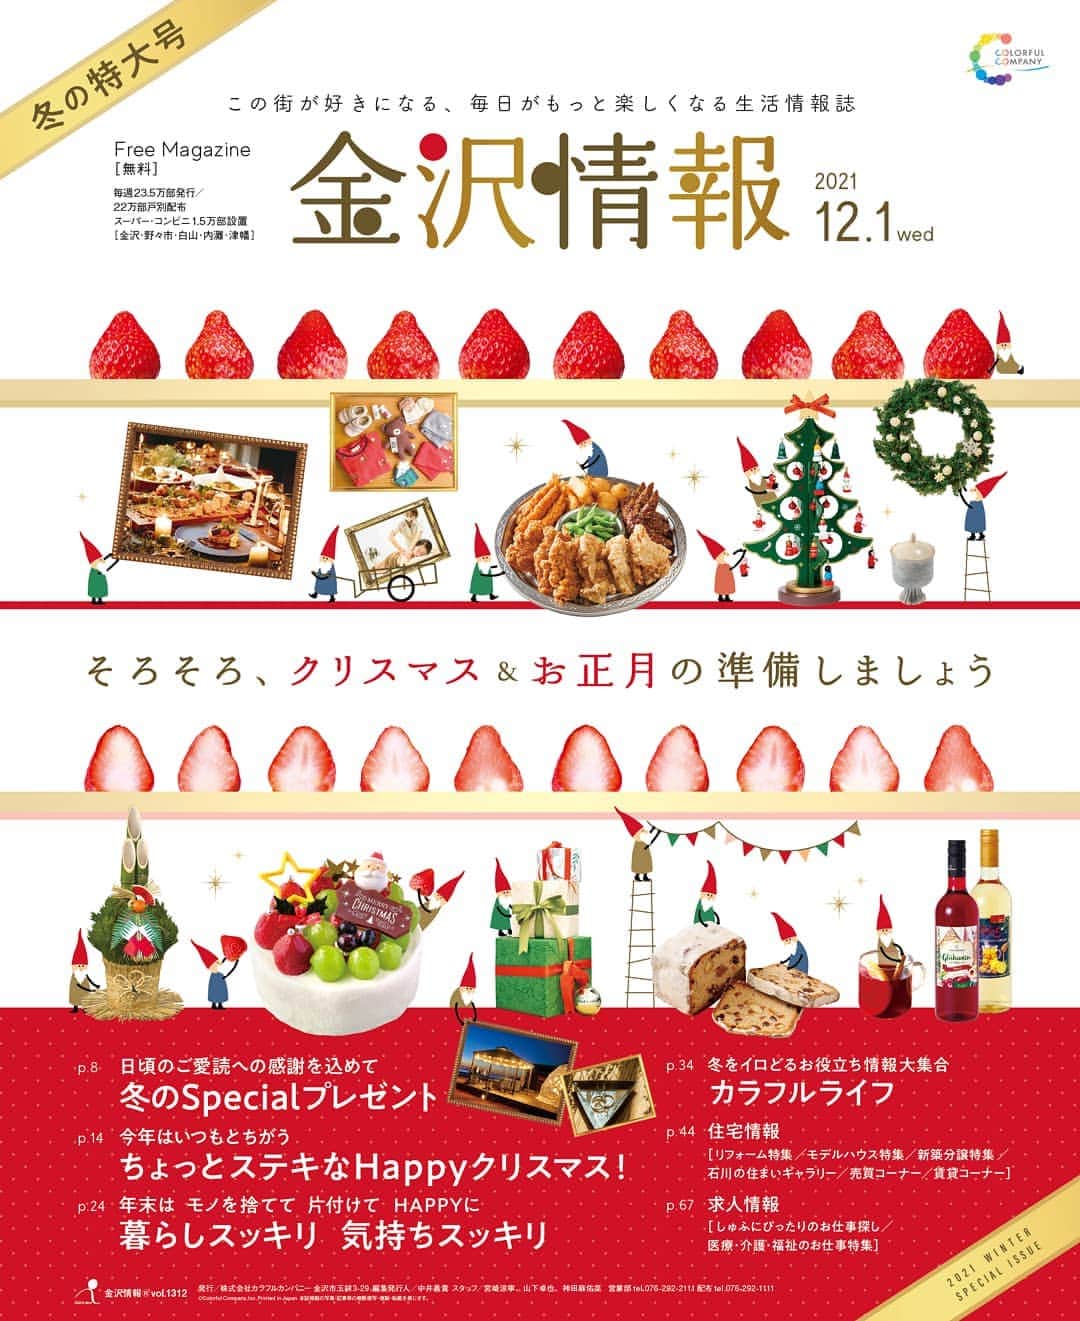 kanazawa_johoのインスタグラム：「【金沢情報】12/2号は年4回の特大号！いつもより倍のボリュームでお届けしています。巻頭特集はクリスマス準備特集！ケーキやオードブルなどおうちパーティーから、ディナーまで美味しそうな情報たっぷり。第2特集は大掃除前にみてほしい片付けのコツを紹介しています。年末の準備にお役立てください♪」